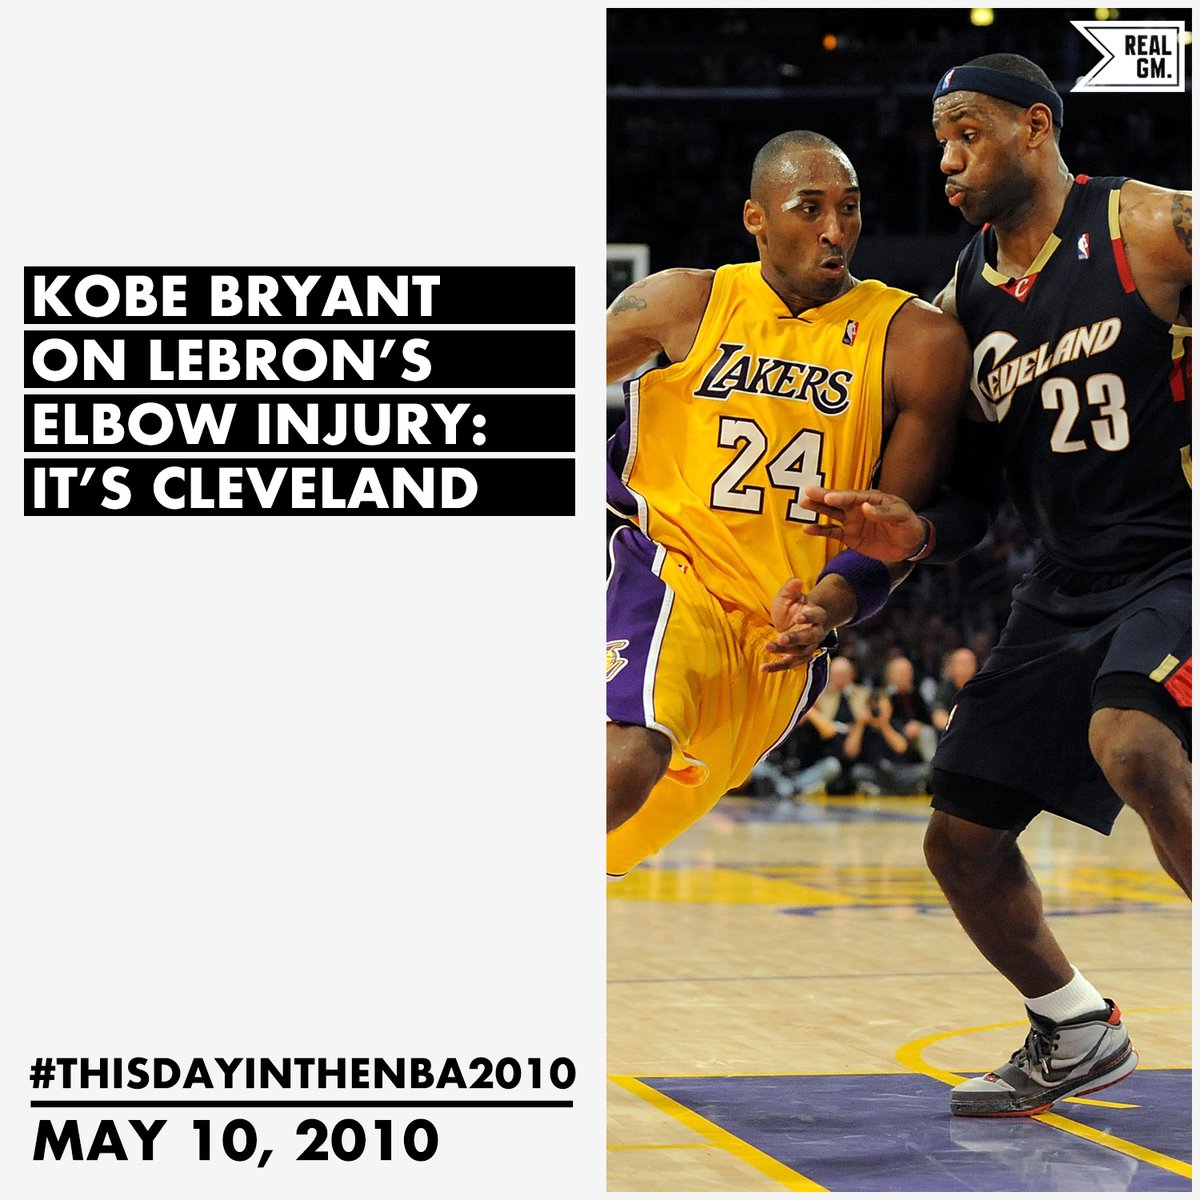  #ThisDayInTheNBA2010May 10, 2010Kobe Bryant On LeBron's Elbow Injury: It's Cleveland https://basketball.realgm.com/wiretap/203798/Kobe-Bryant-On-LeBrons-Elbow-Injury-Its-Cleveland